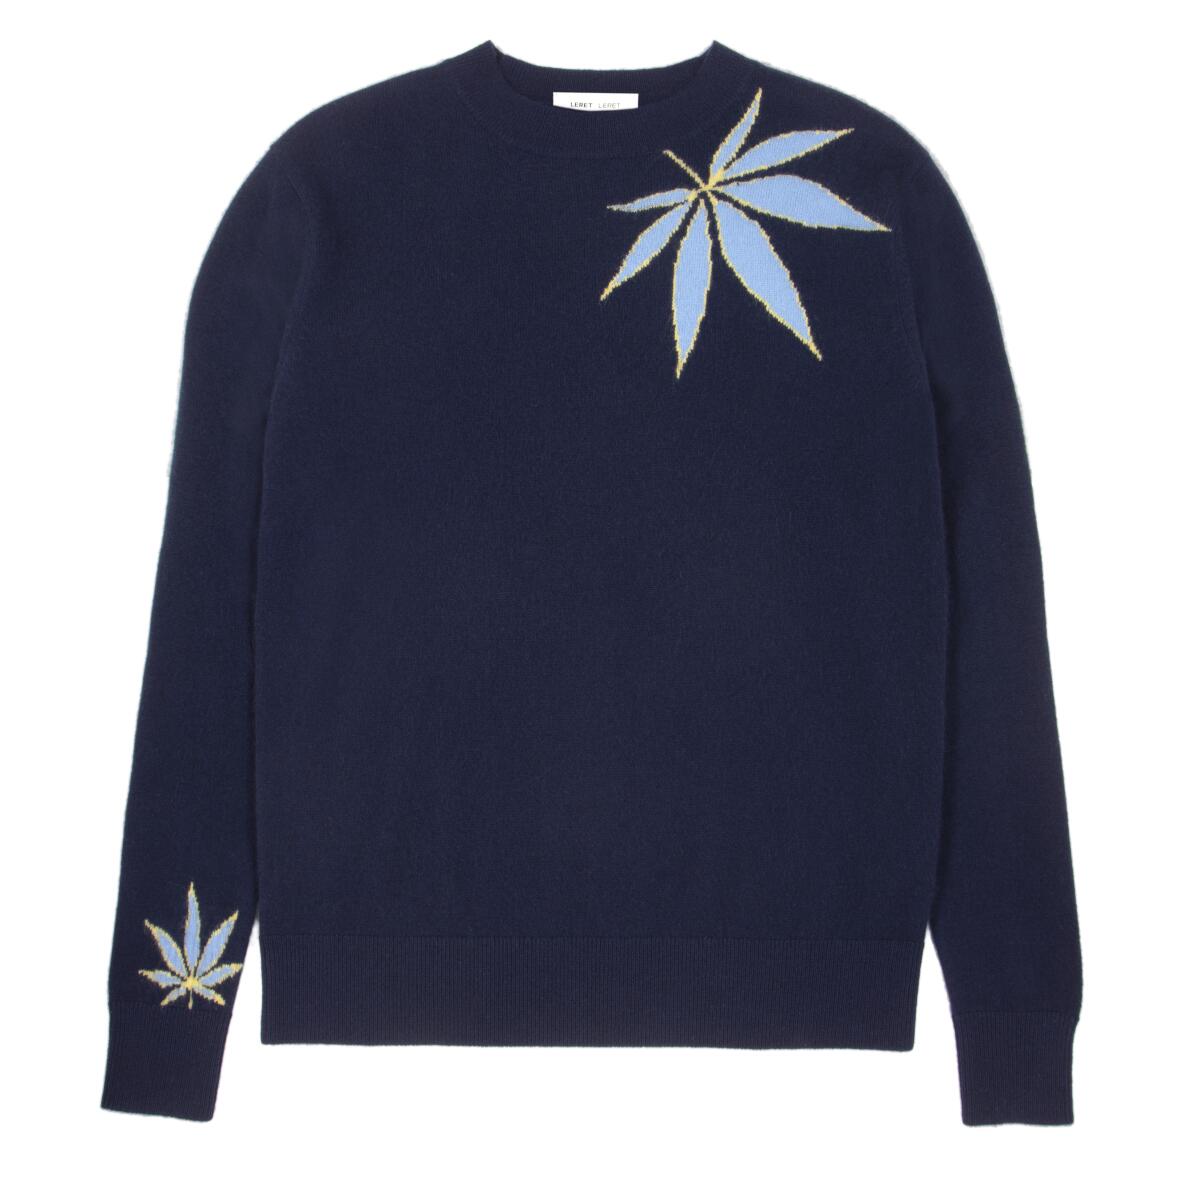 Leret Leret's No. 21 cashmere crew-neck Mongolian cashmere sweater features cannabis leaves.